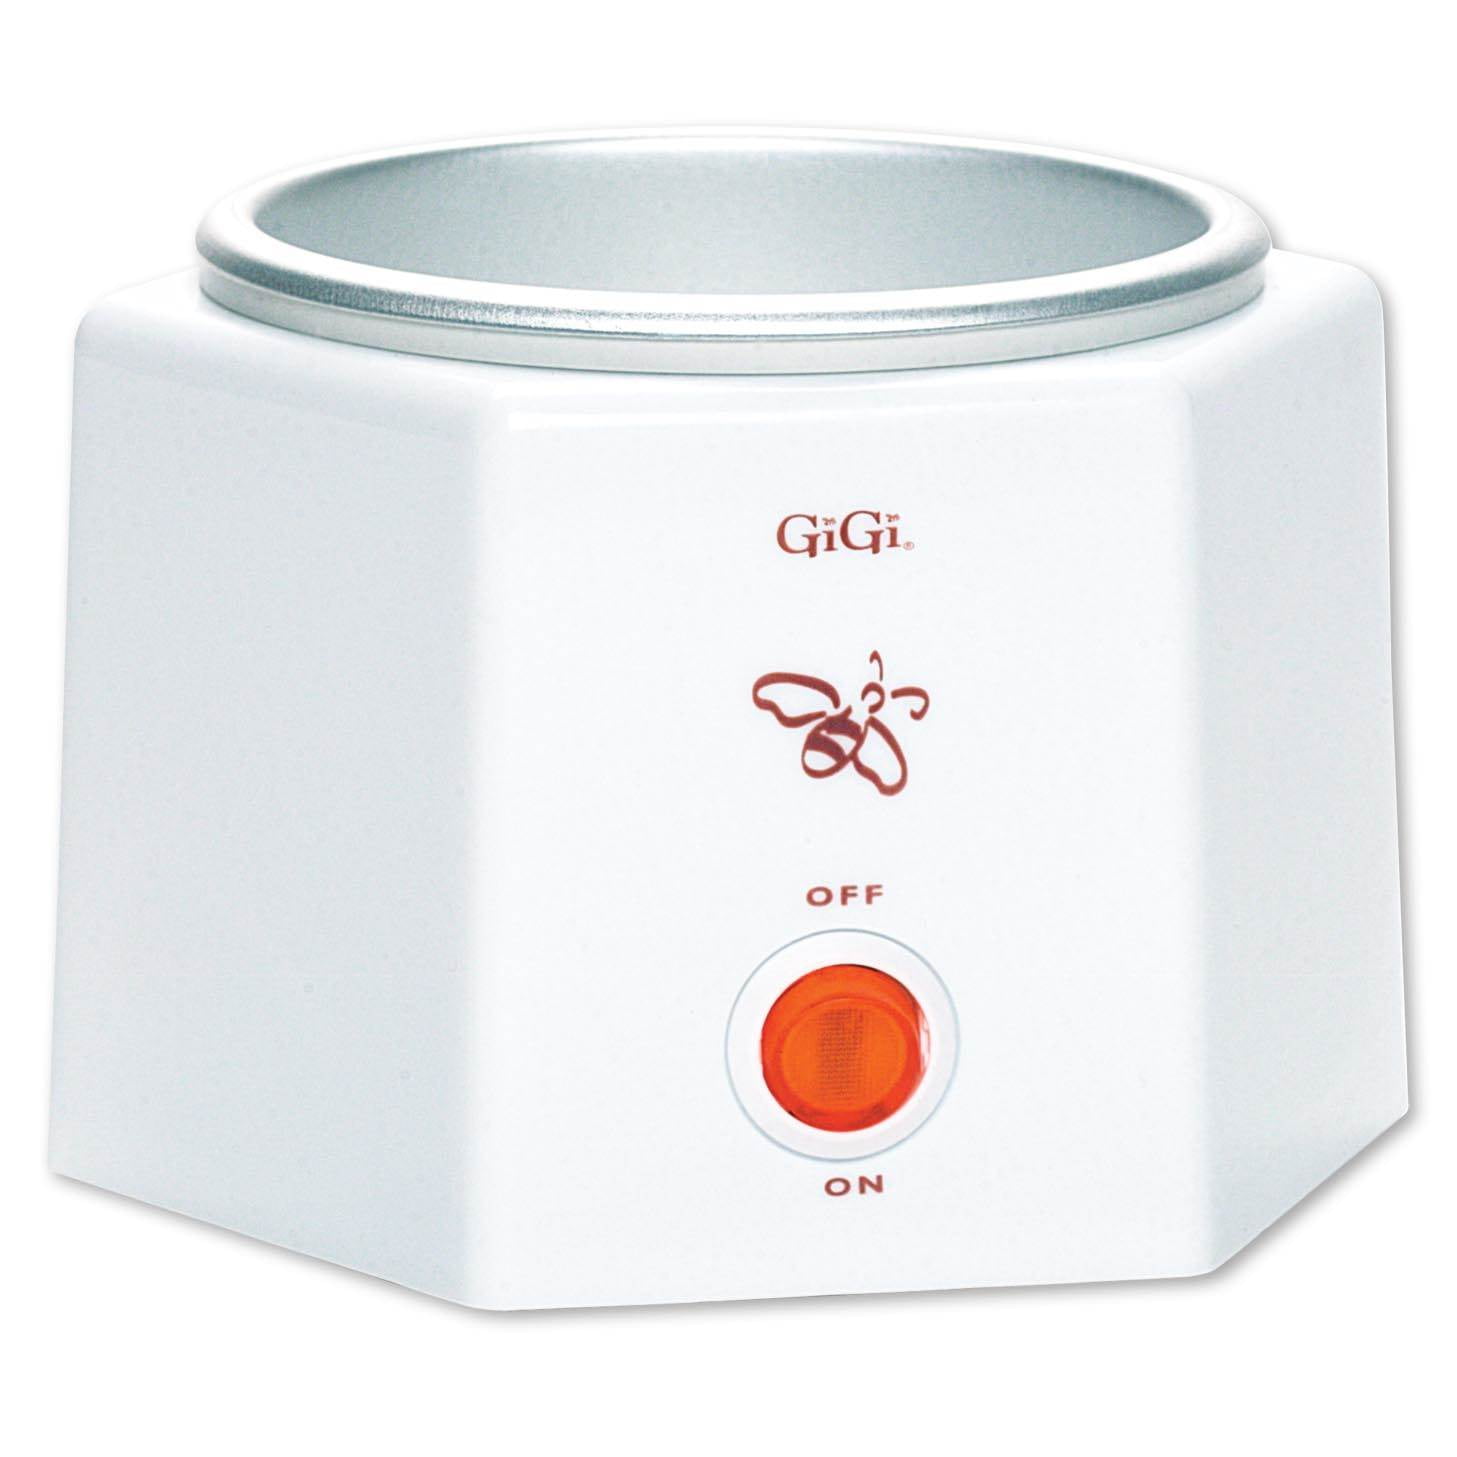 GiGi Honee - Calentador de cera para depilación para latas de cera de 14  onzas